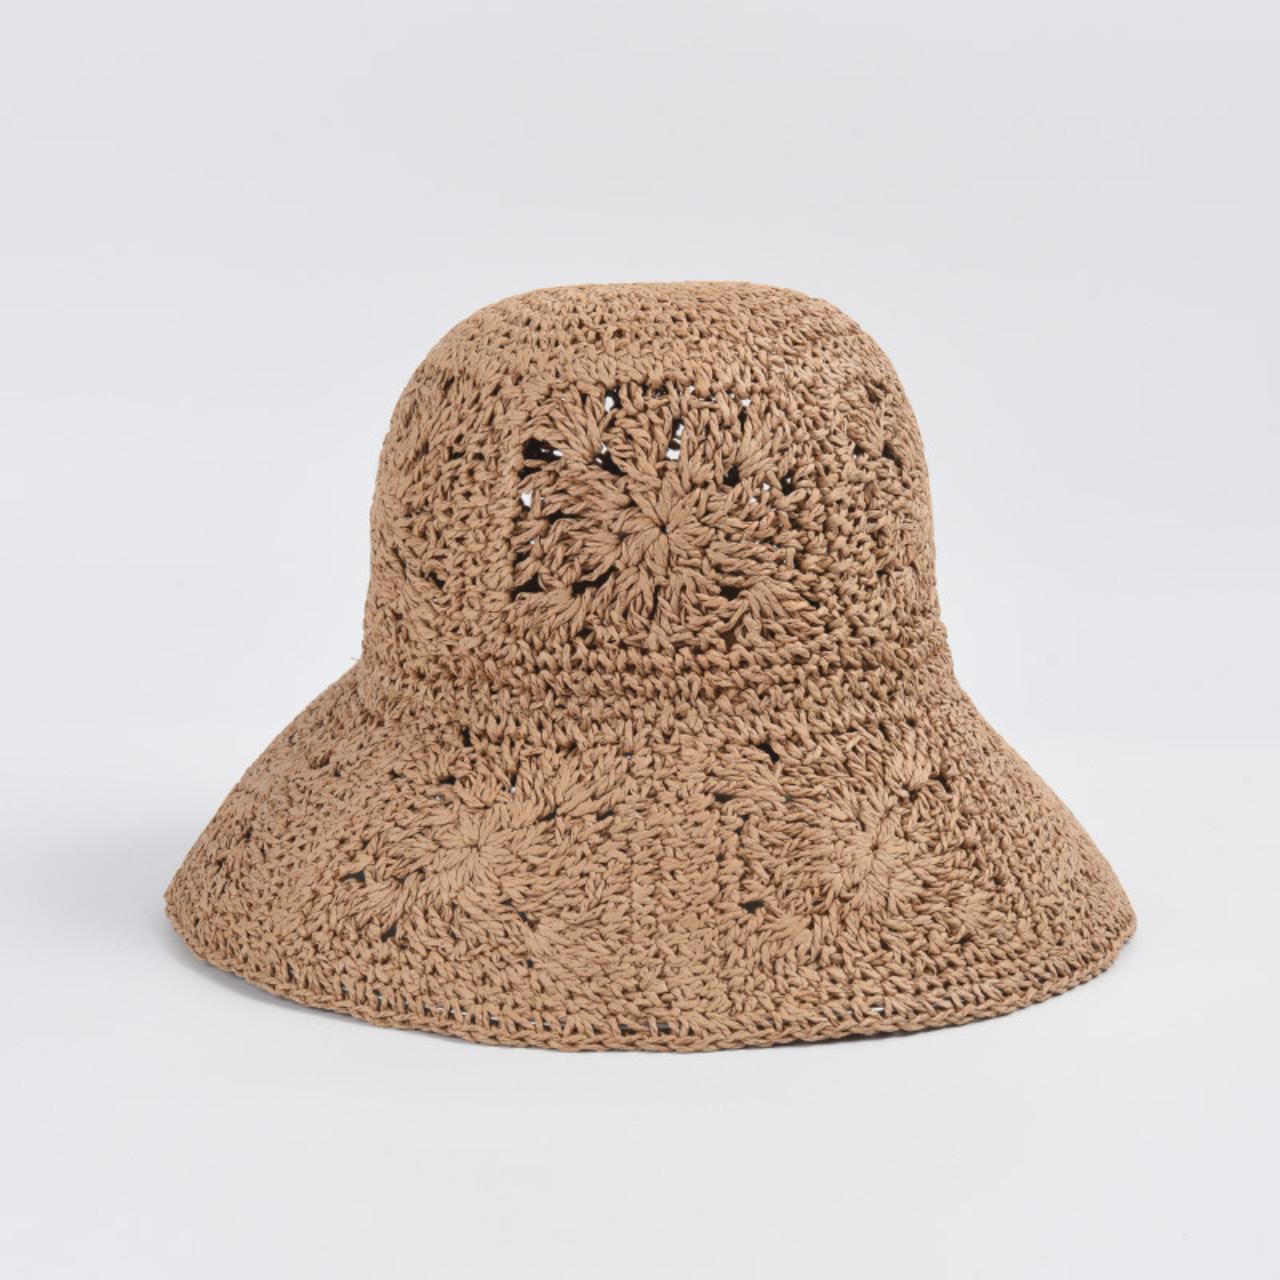 Crochet straw bucket hat for women sun protection - Depop